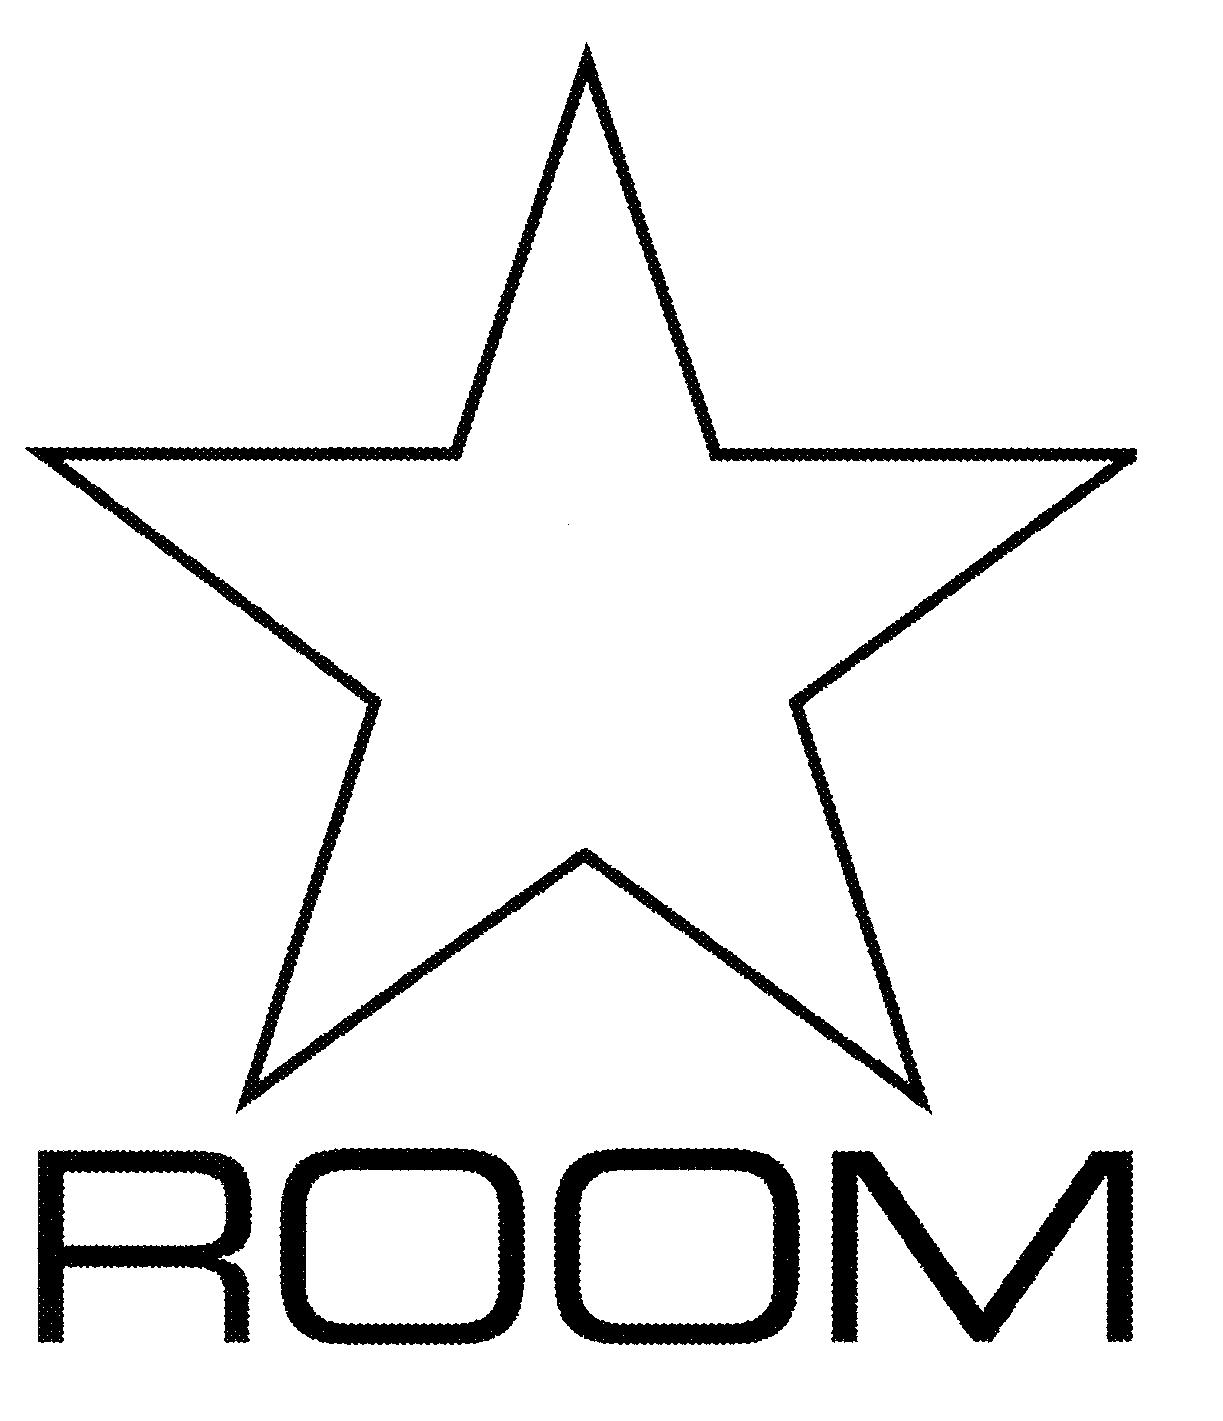 Trademark Logo ROOM